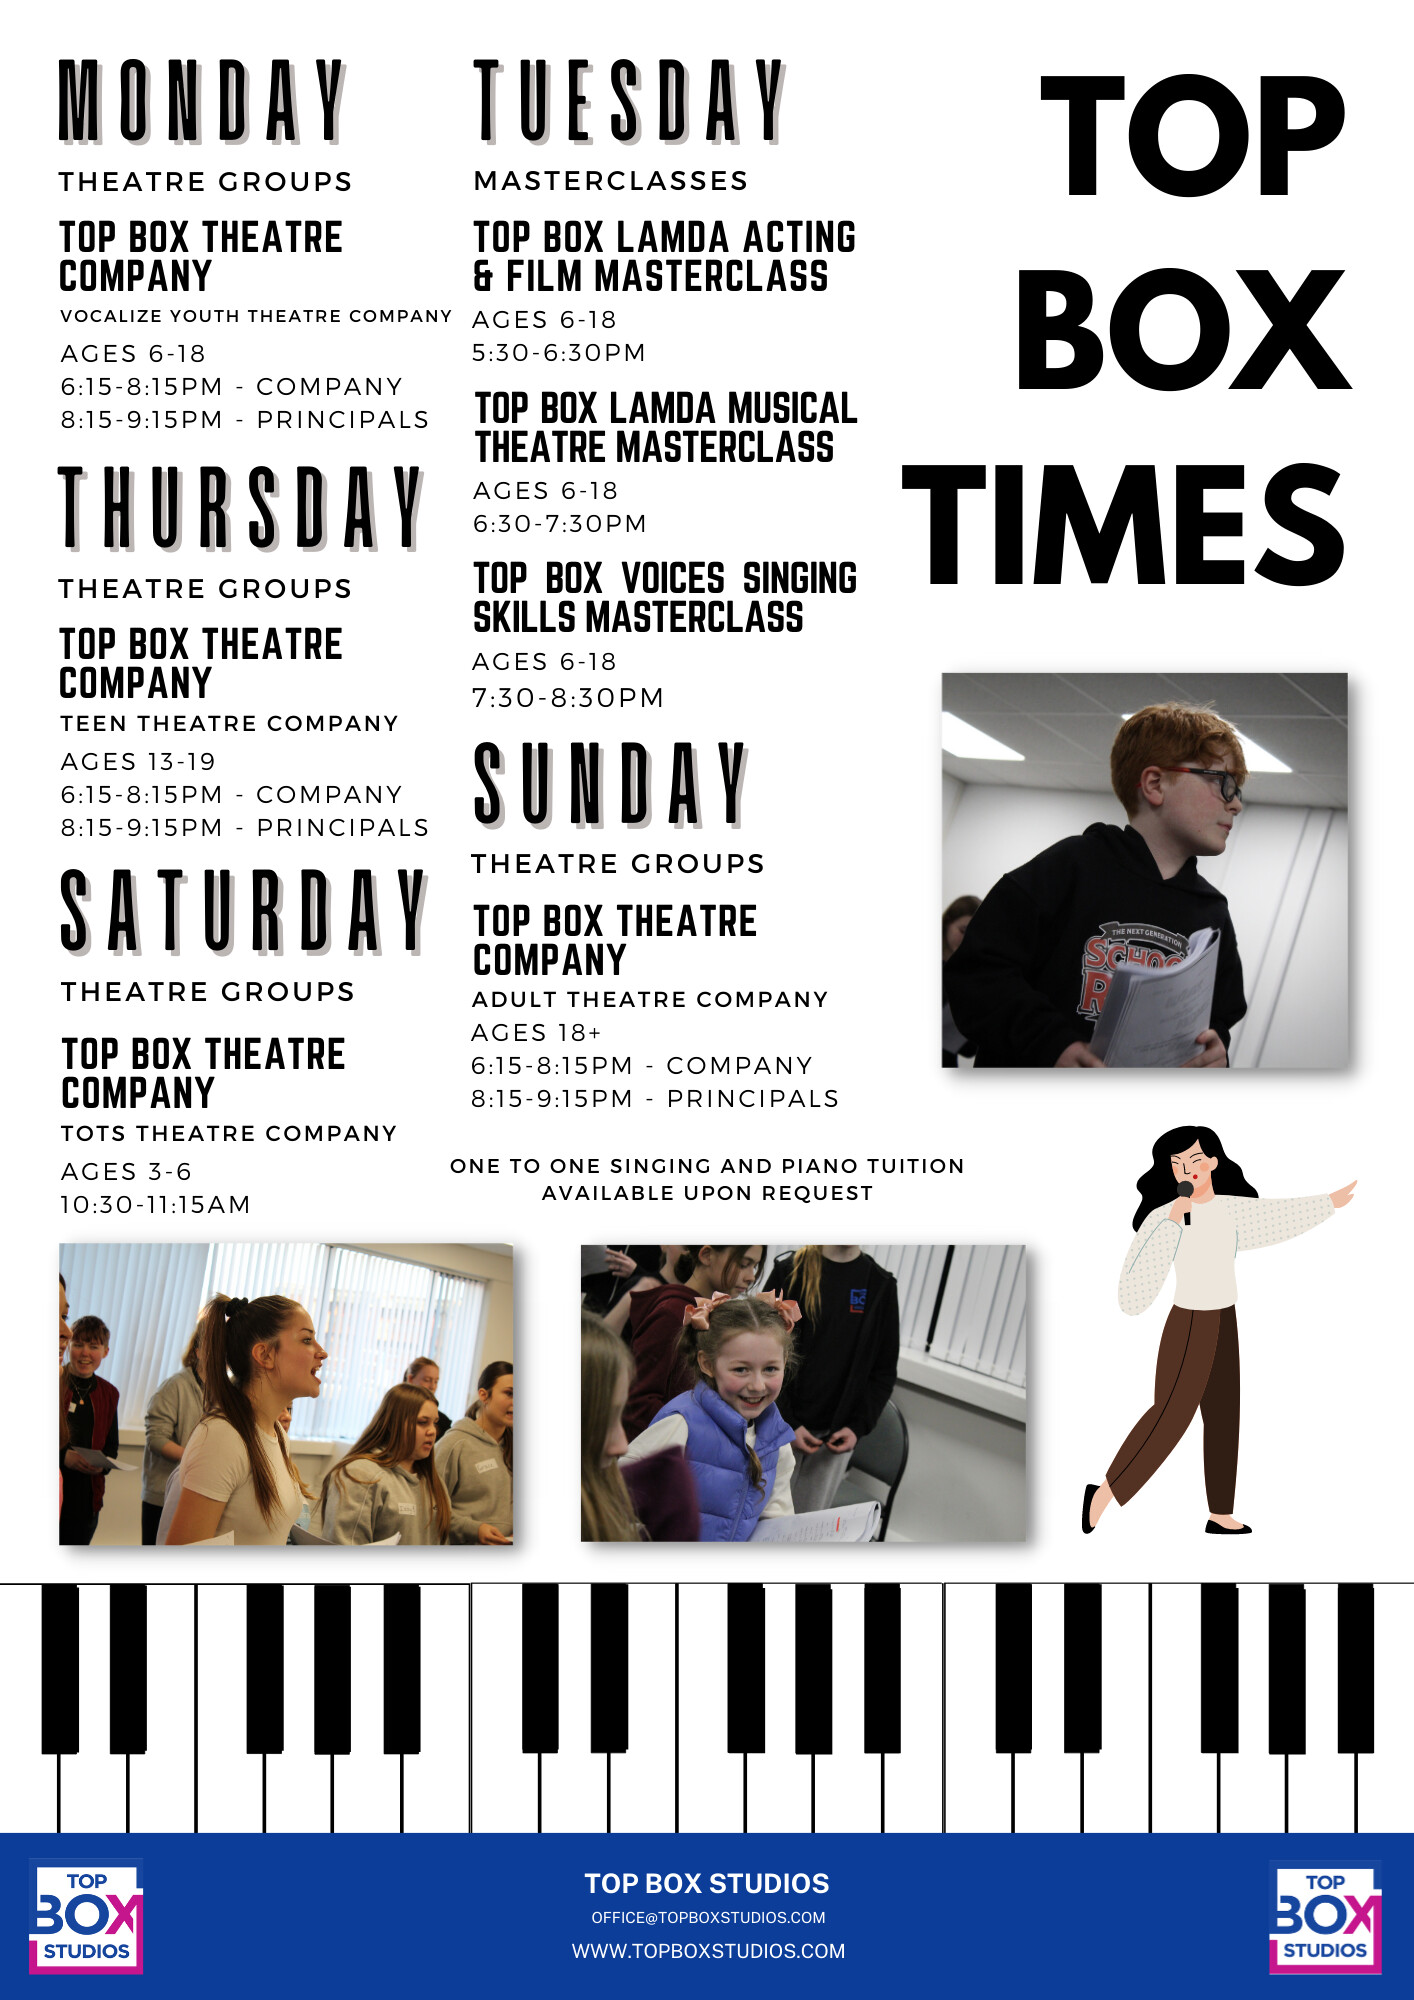 Top Box Tots Theatre Company